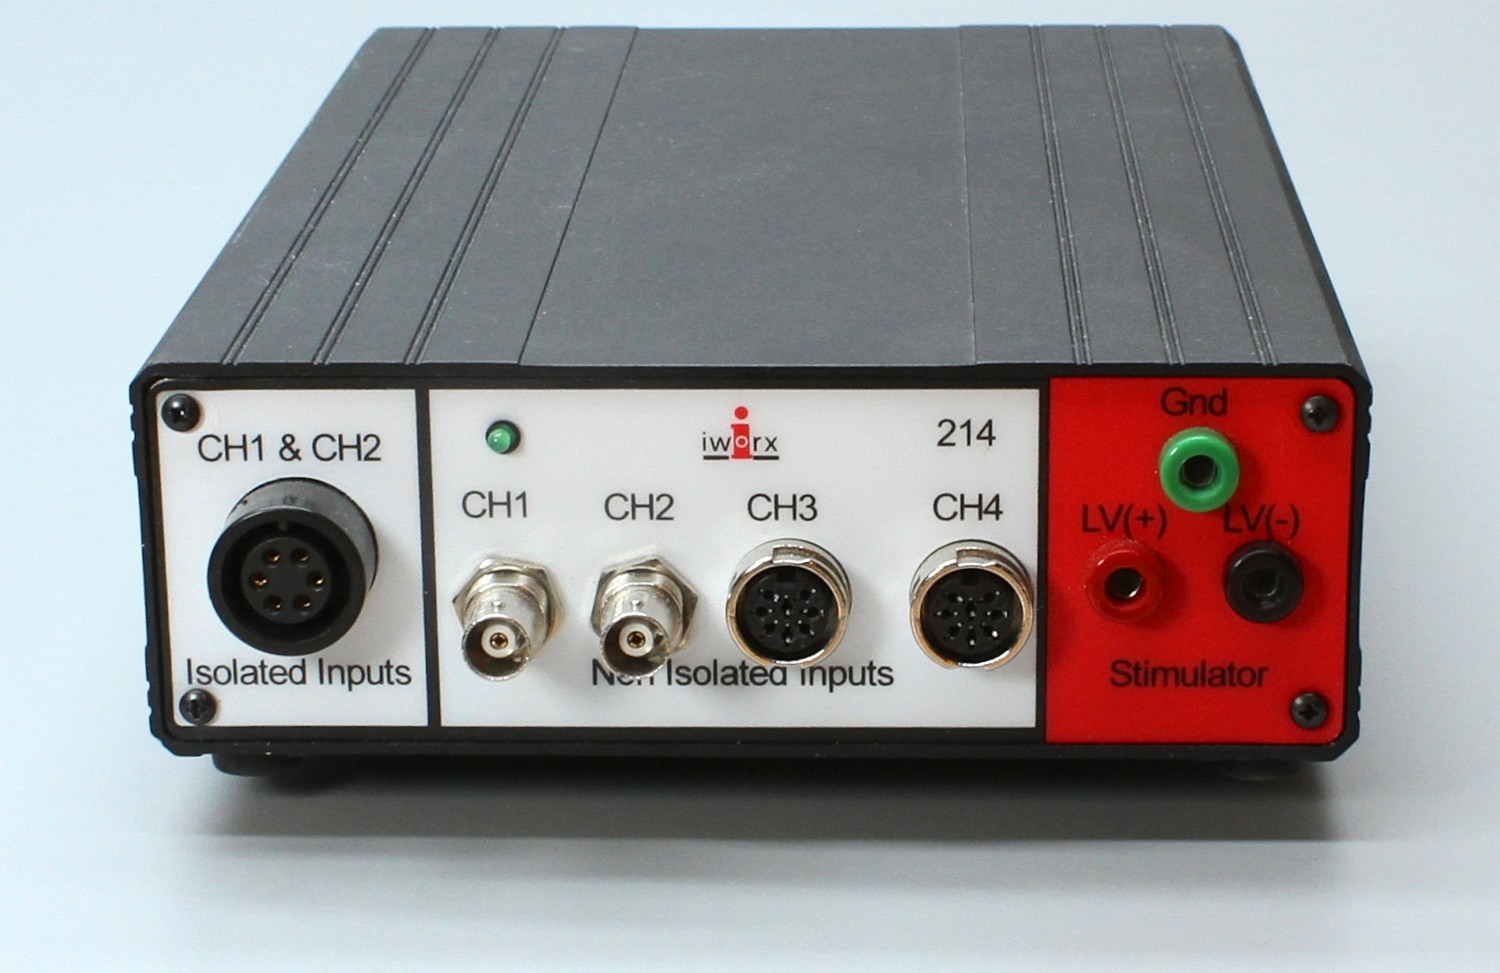 iWorx/214 Four Channel 16 bit, 100 kHz Data Acquisition System